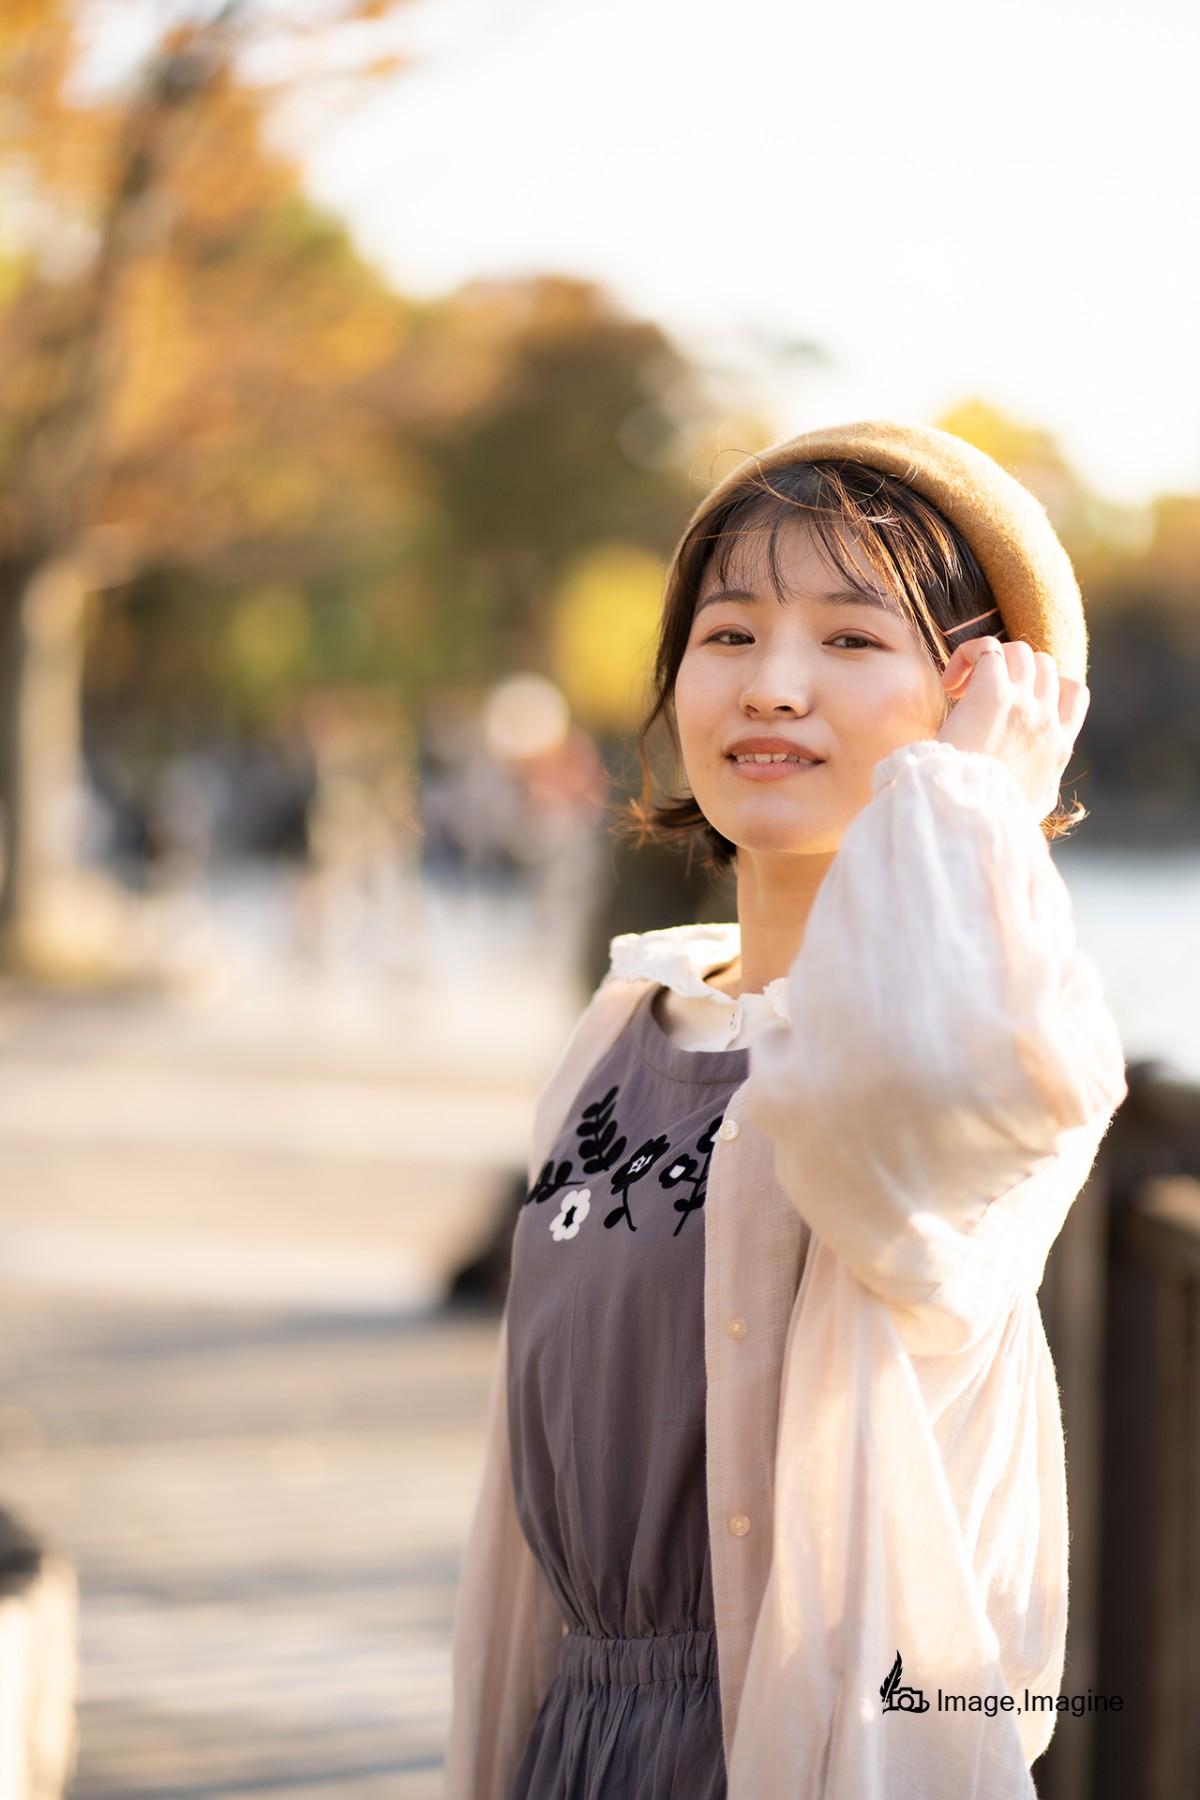 秋の大阪城で女性を撮影した写真。女性は左手で髪をかき分けながらこちらに目線を向けている。